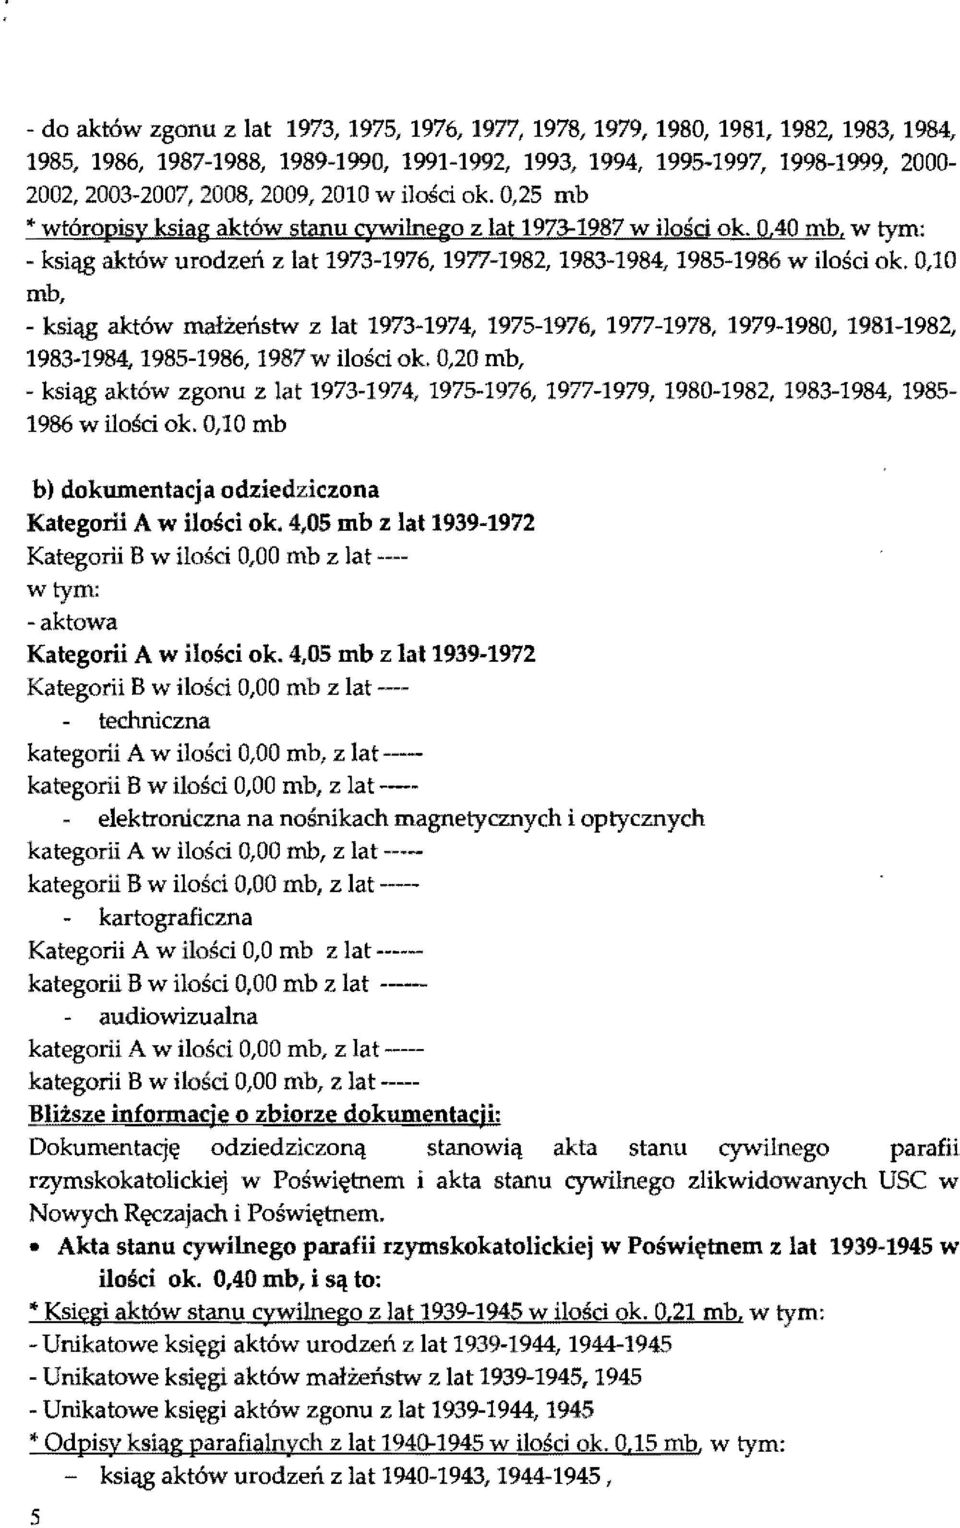 0,10 mb, - ksiąg aktów mał±eństw z at 1973-1974, 1975-1976, 1977-1978, 1979-1980, 1981-1982, 1983-1984, 1985-1986, 1987 w iości ok.